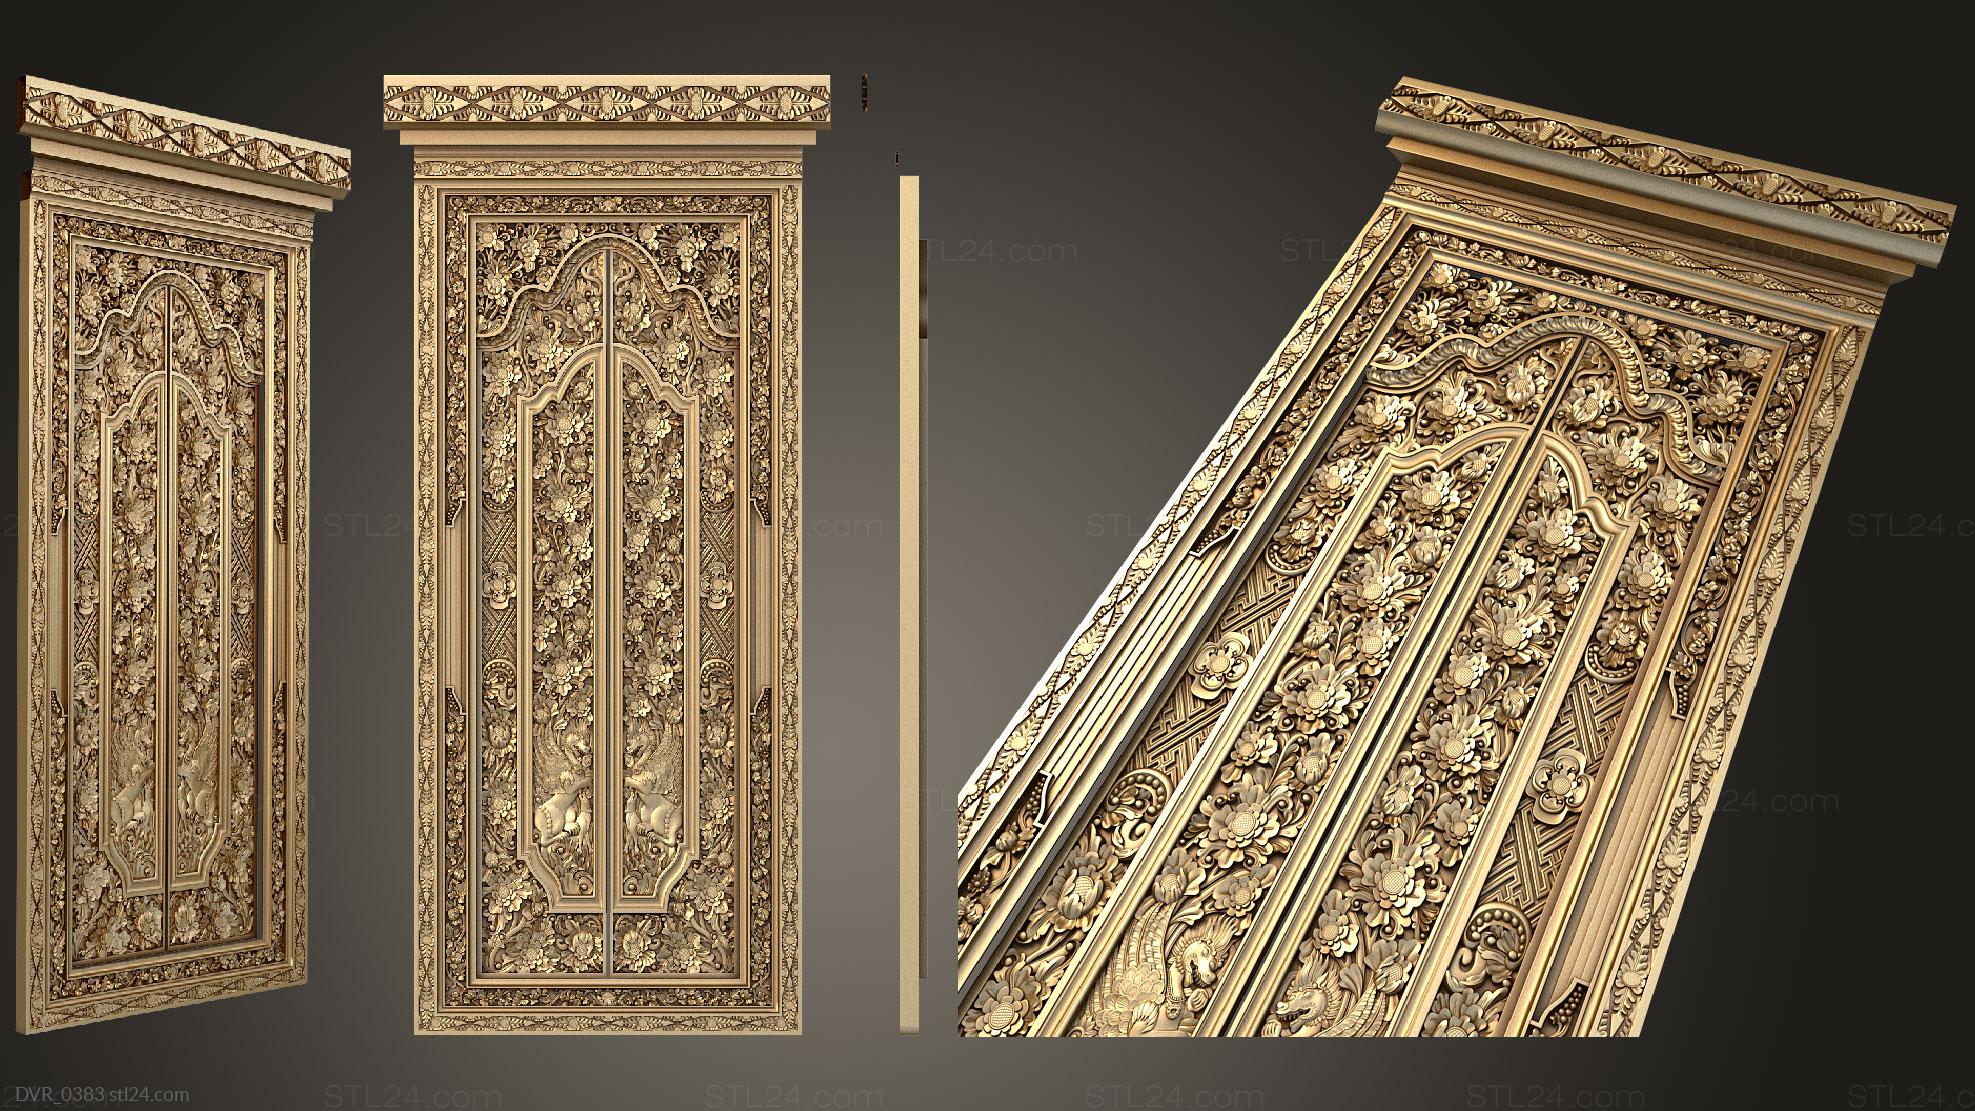 Двери резные (Дверь обильно украшенная резными растительными декорами, DVR_0383) 3D модель для ЧПУ станка